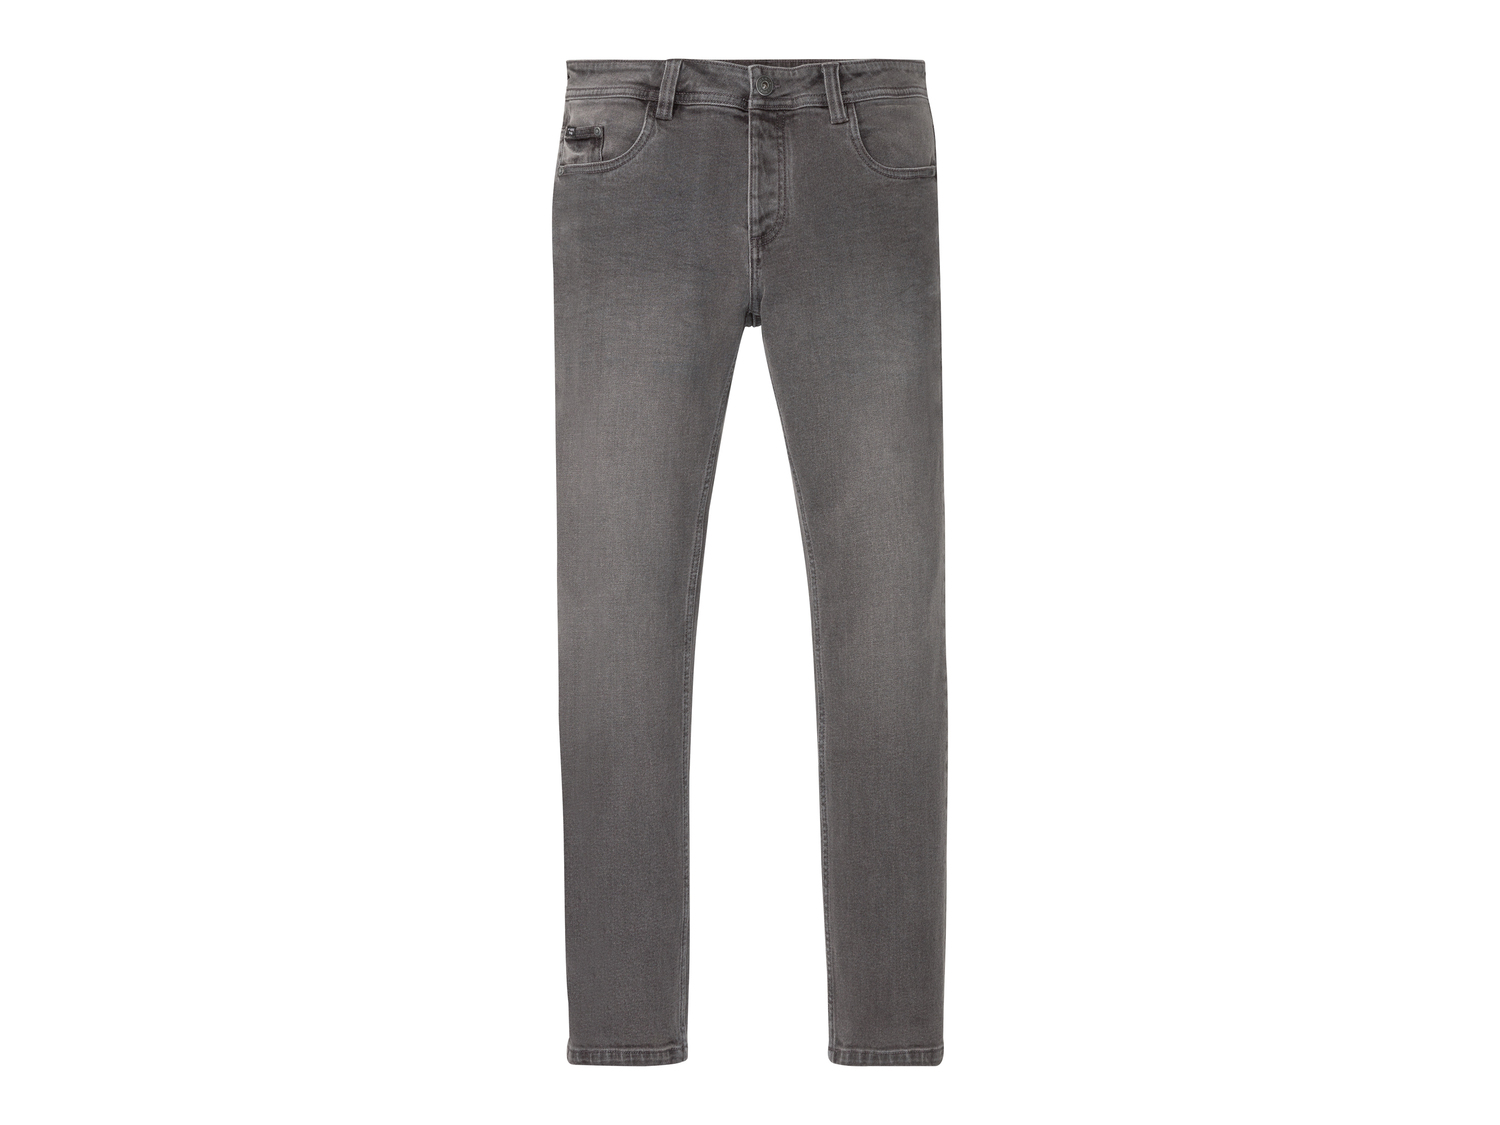 Jeans Slim Fit da uomo Livergy, prezzo 11.99 &#8364; 
Misure: 46-54
Taglie disponibili

Caratteristiche

- ...